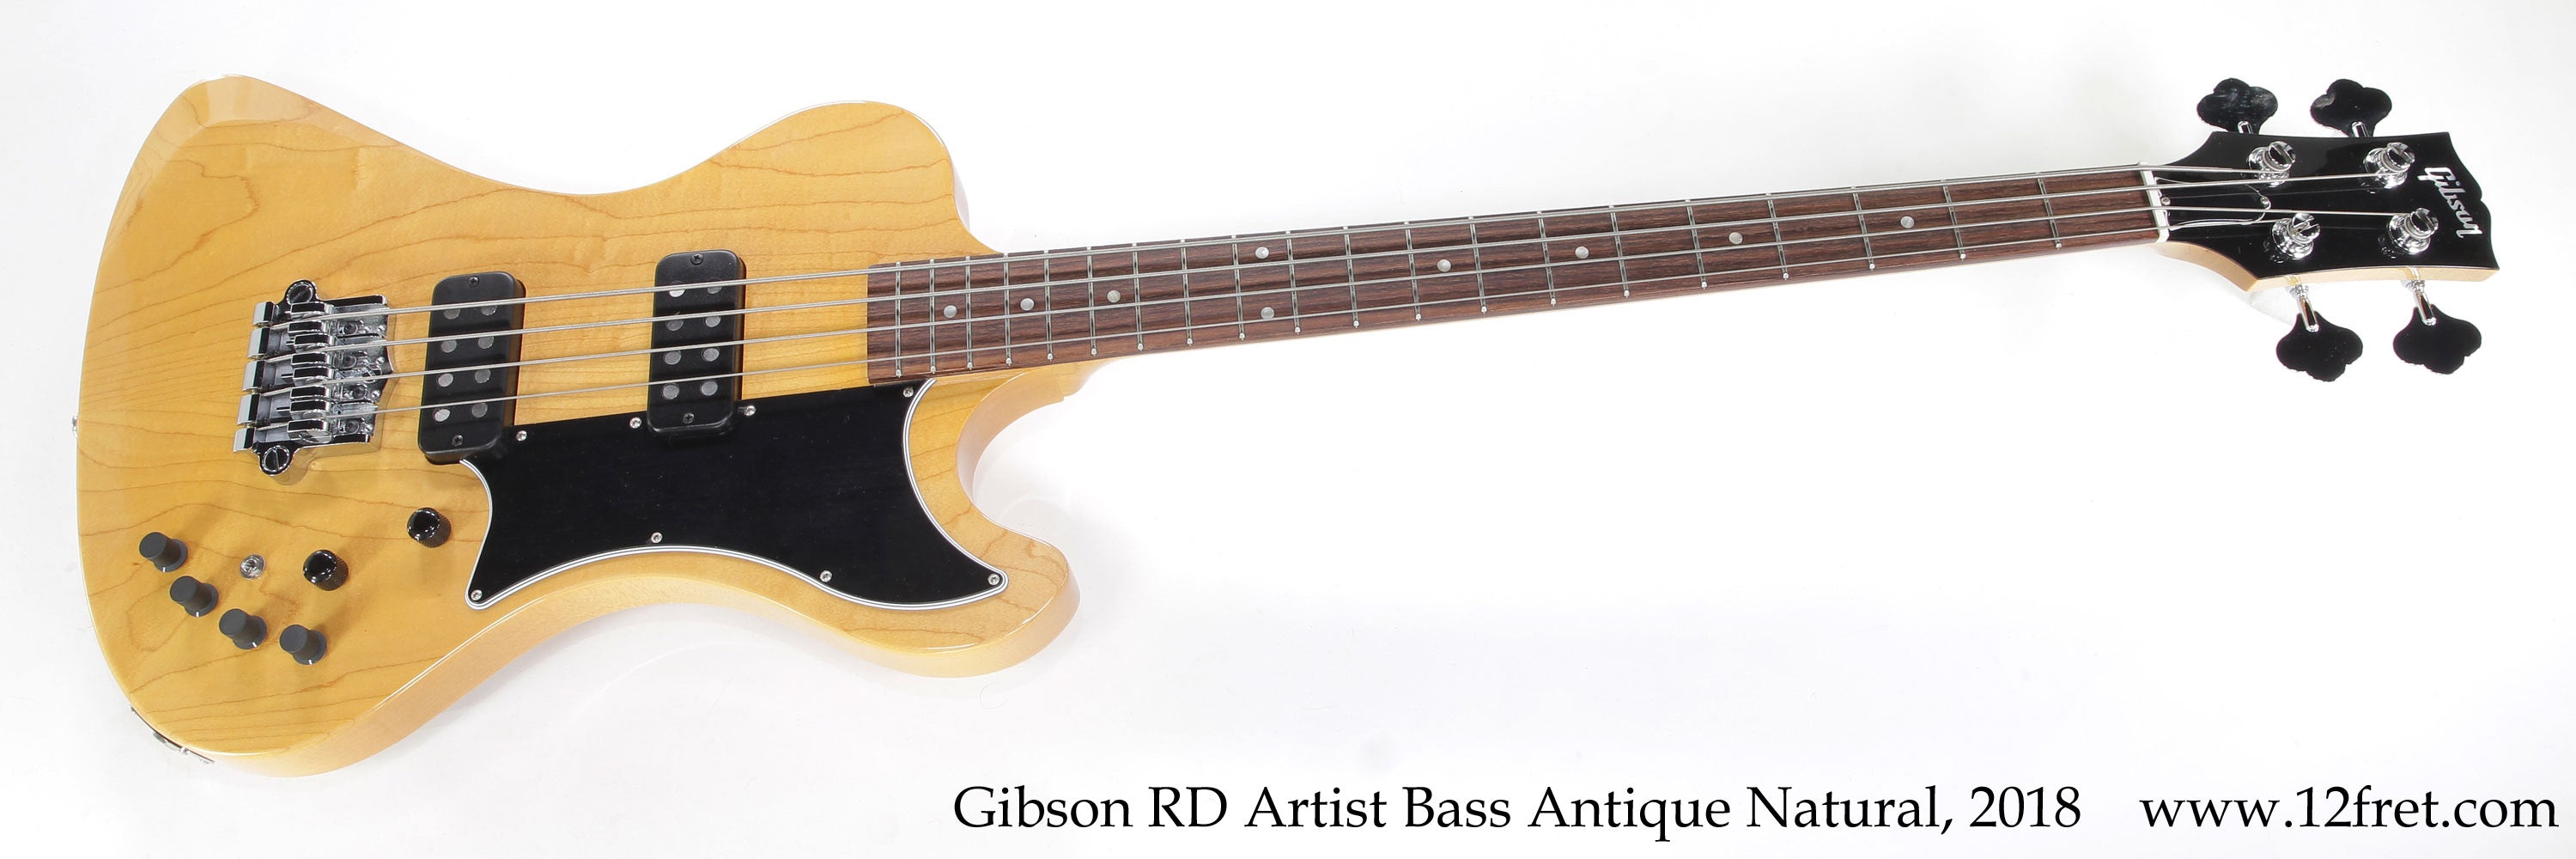 Gibson RD Artist Bass Antique Natural, 2018 - The Twelfth Fret